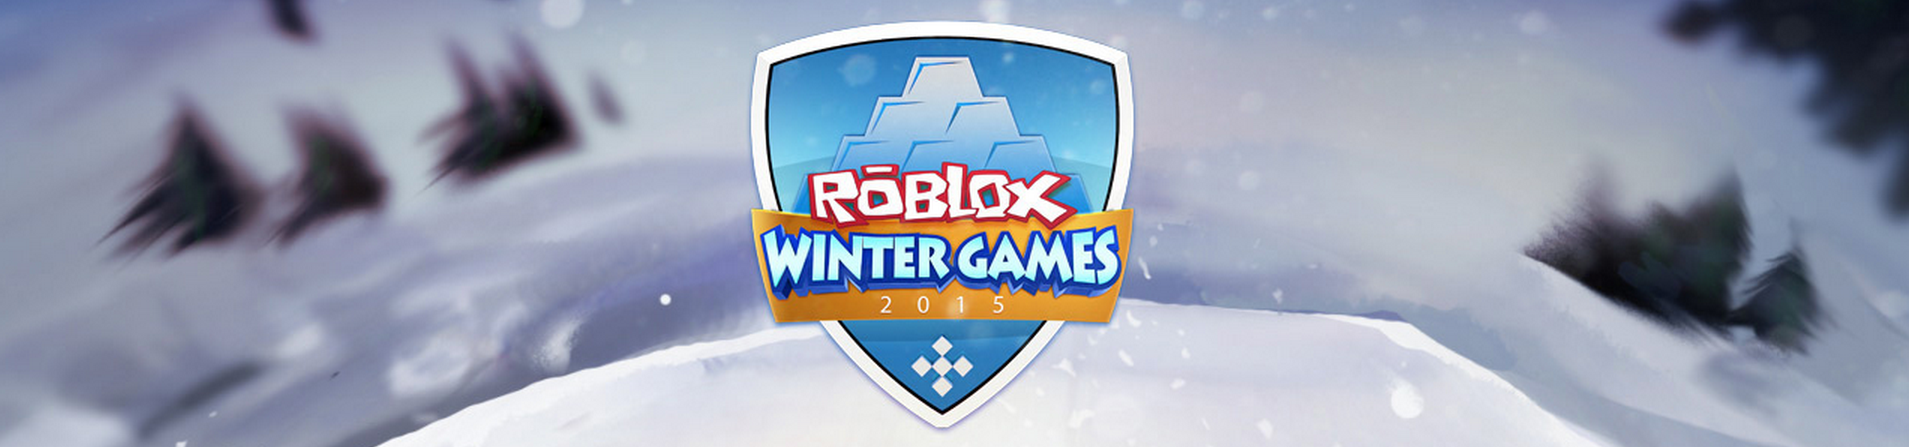 Winter Games 2015 Roblox Wikia Fandom - snow knight roblox